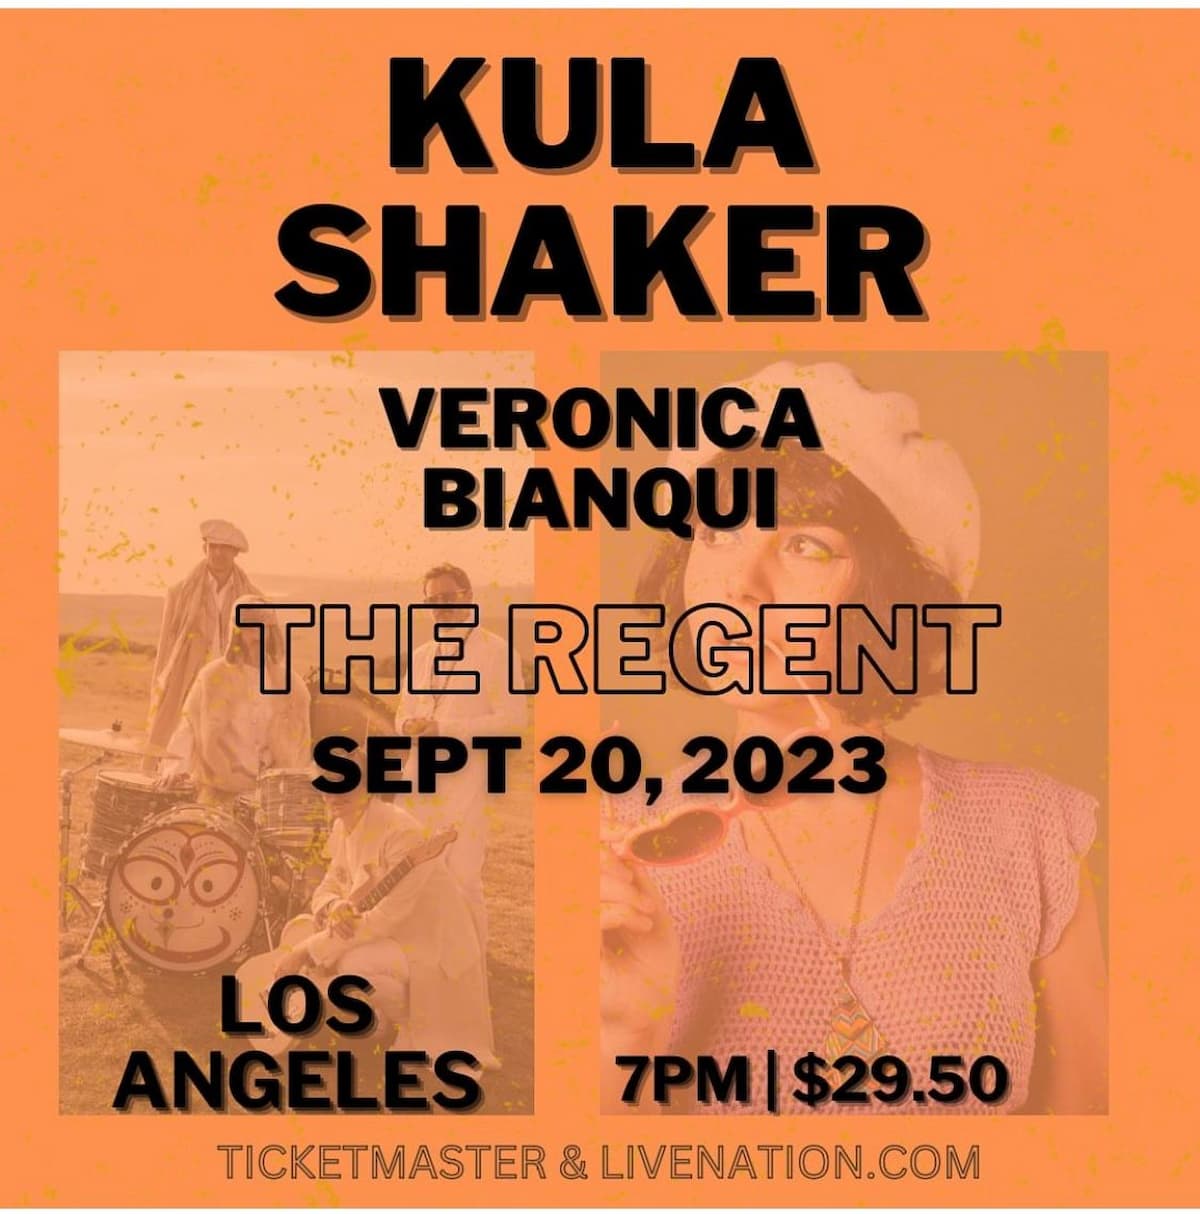 Kula Shaker / Veronica Bianqui